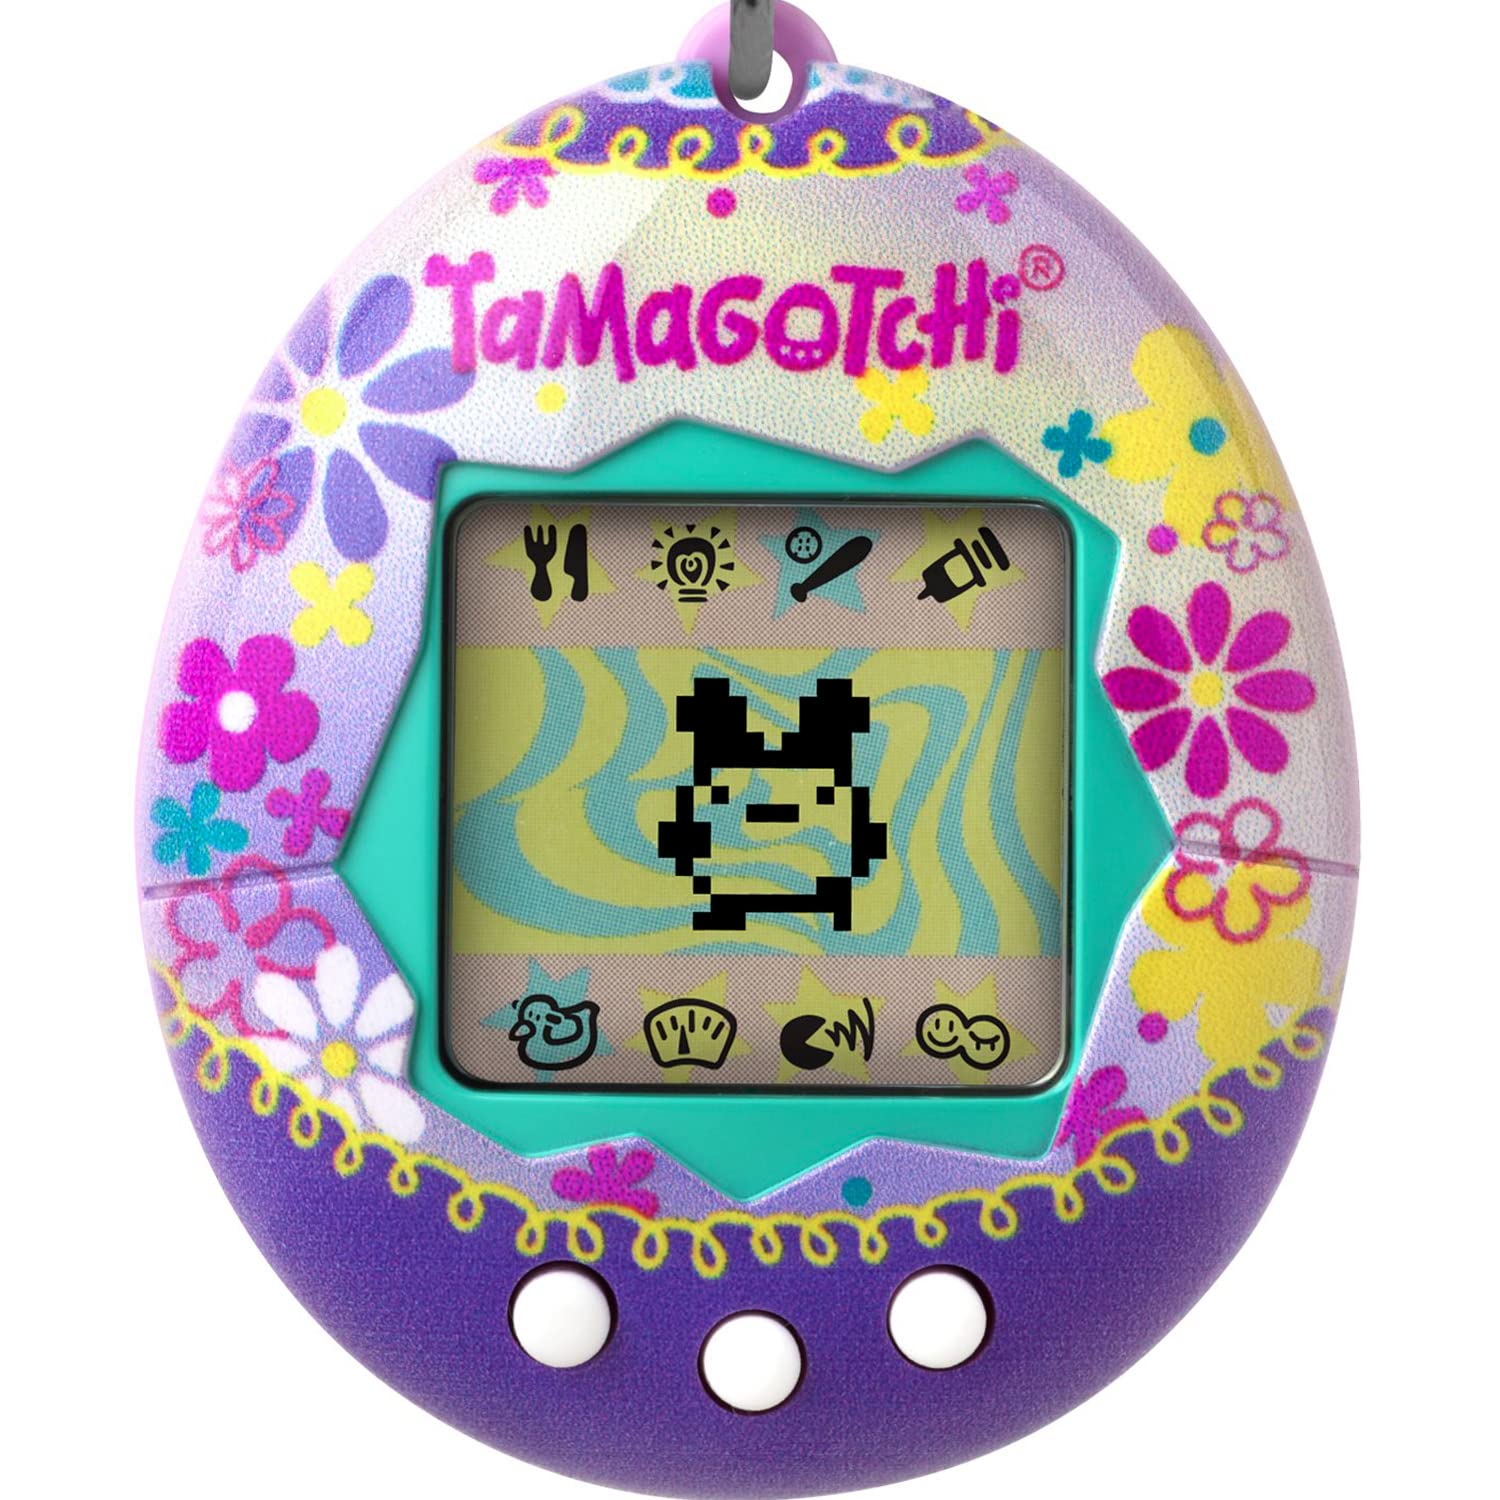 Promotions Bandai - Tamagotchi - Tamagotchi original - Paradise - Animal électronique virtuel avec écran, 3 boutons et jeux - 42934 yLfGP0v2P boutique en ligne